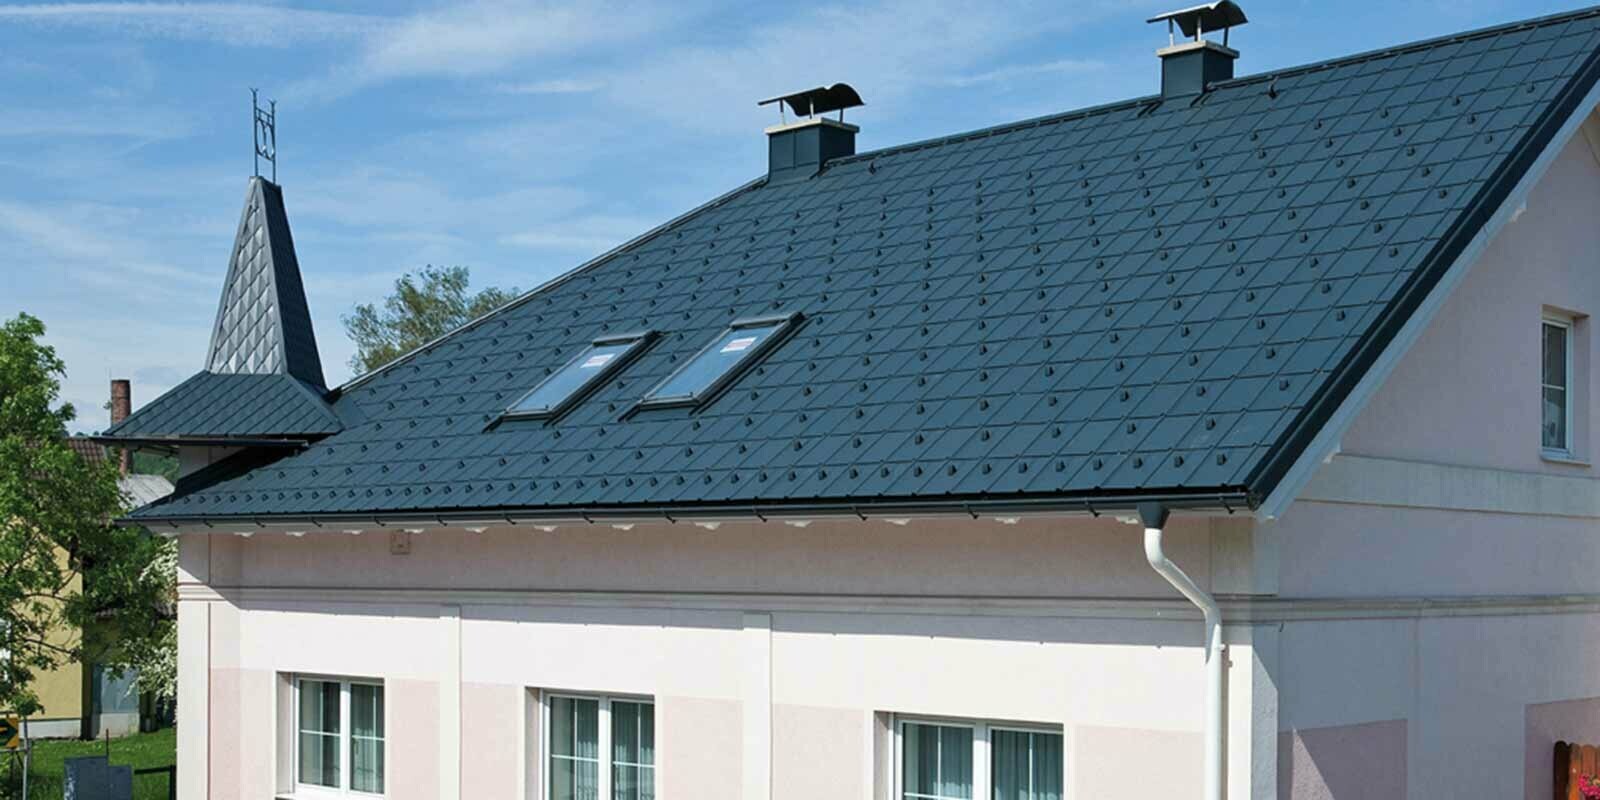 Maison après la rénovation de toiture à l’aide de tuiles PREFA, en Autriche. Auparavant fibrociment Eternit avec tourelle et façade rose